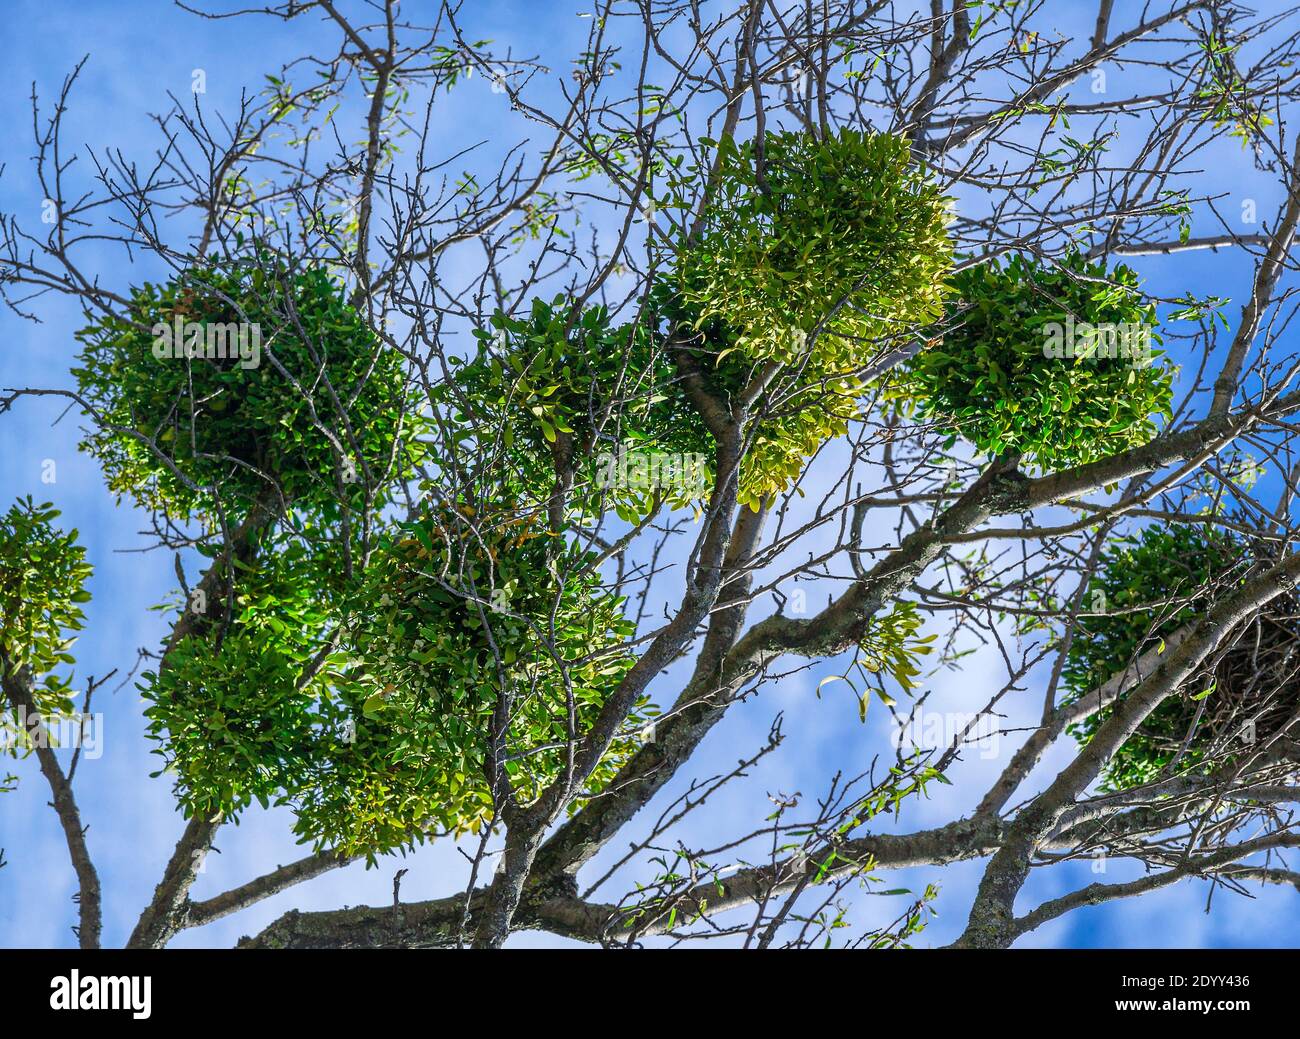 Grappoli di piante mistletoe album visco su un albero, in ambiente naturale. Foto Stock